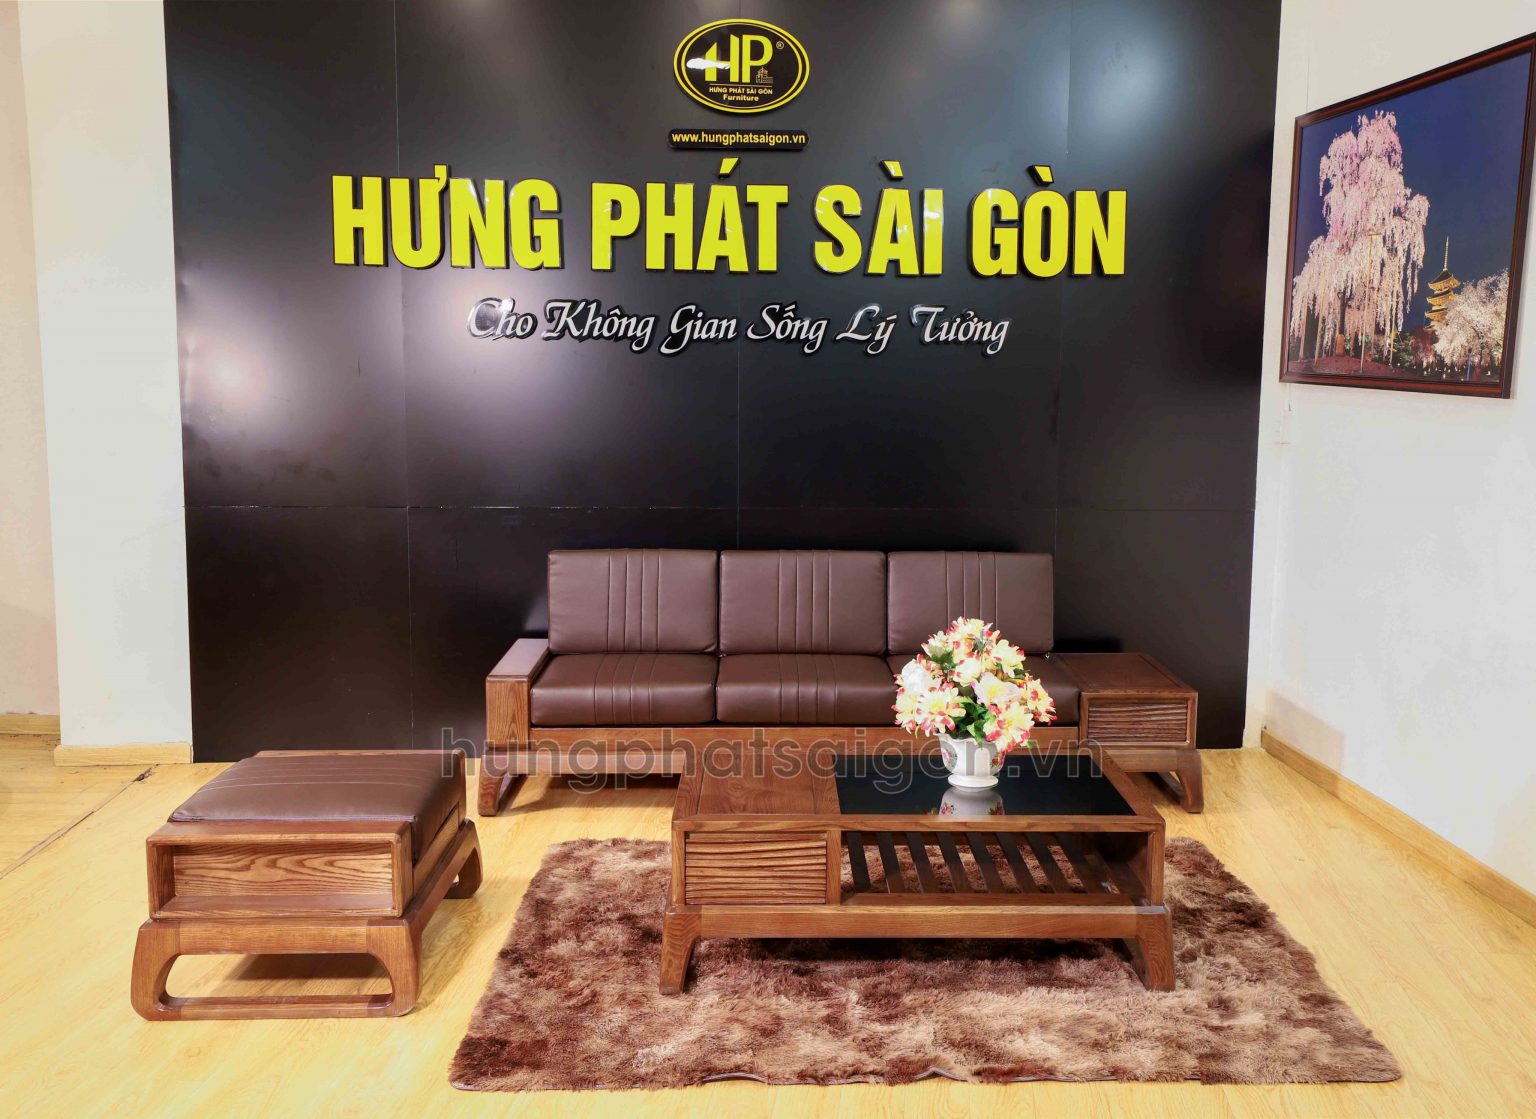 Ghế sofa gỗ của Hưng Phát Sài Gòn luôn được đánh giá cao về chất lượng 